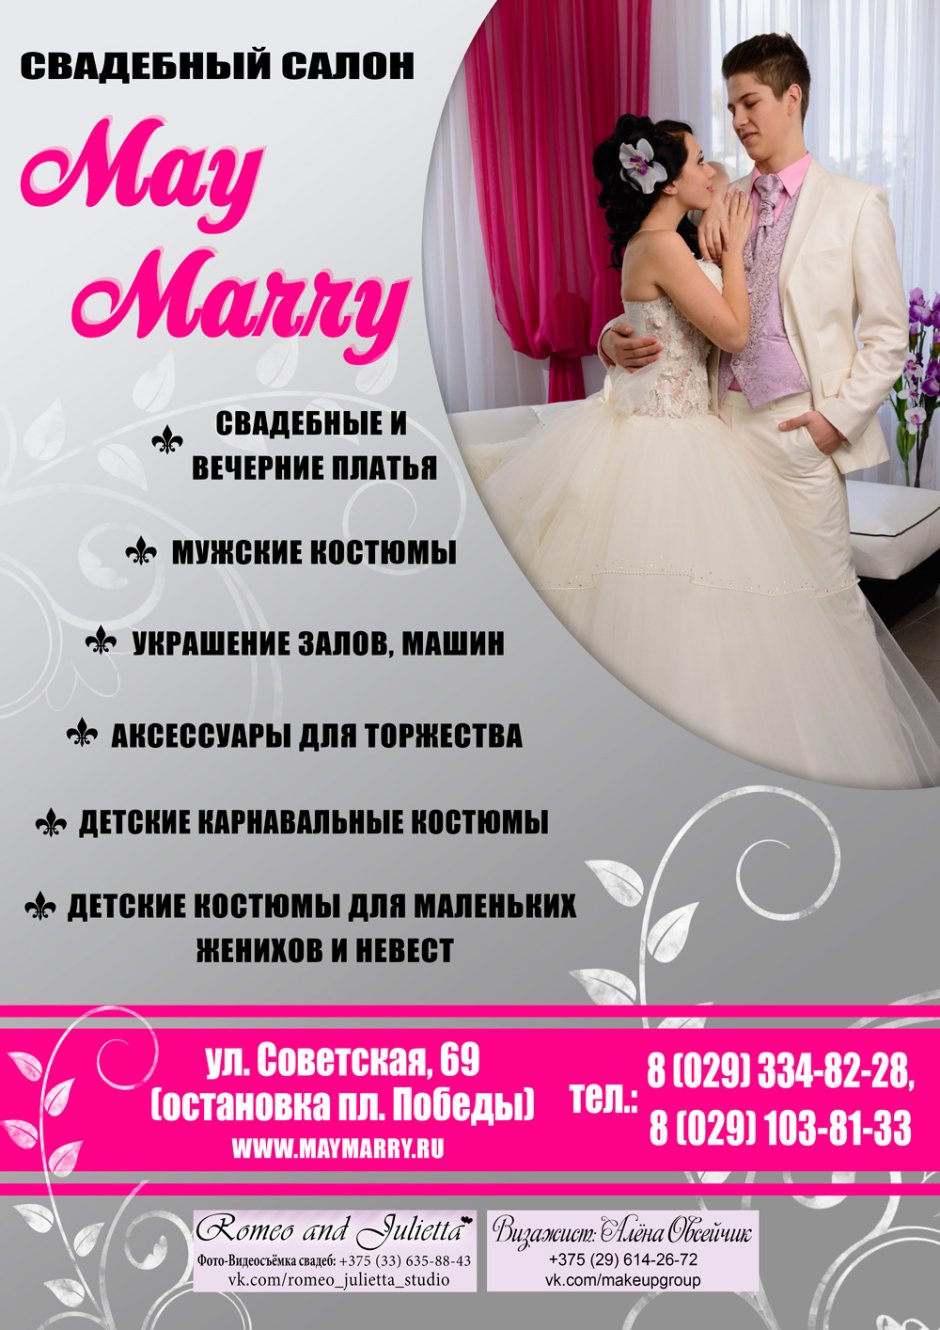 Бобруйск салон свадебный в контакте